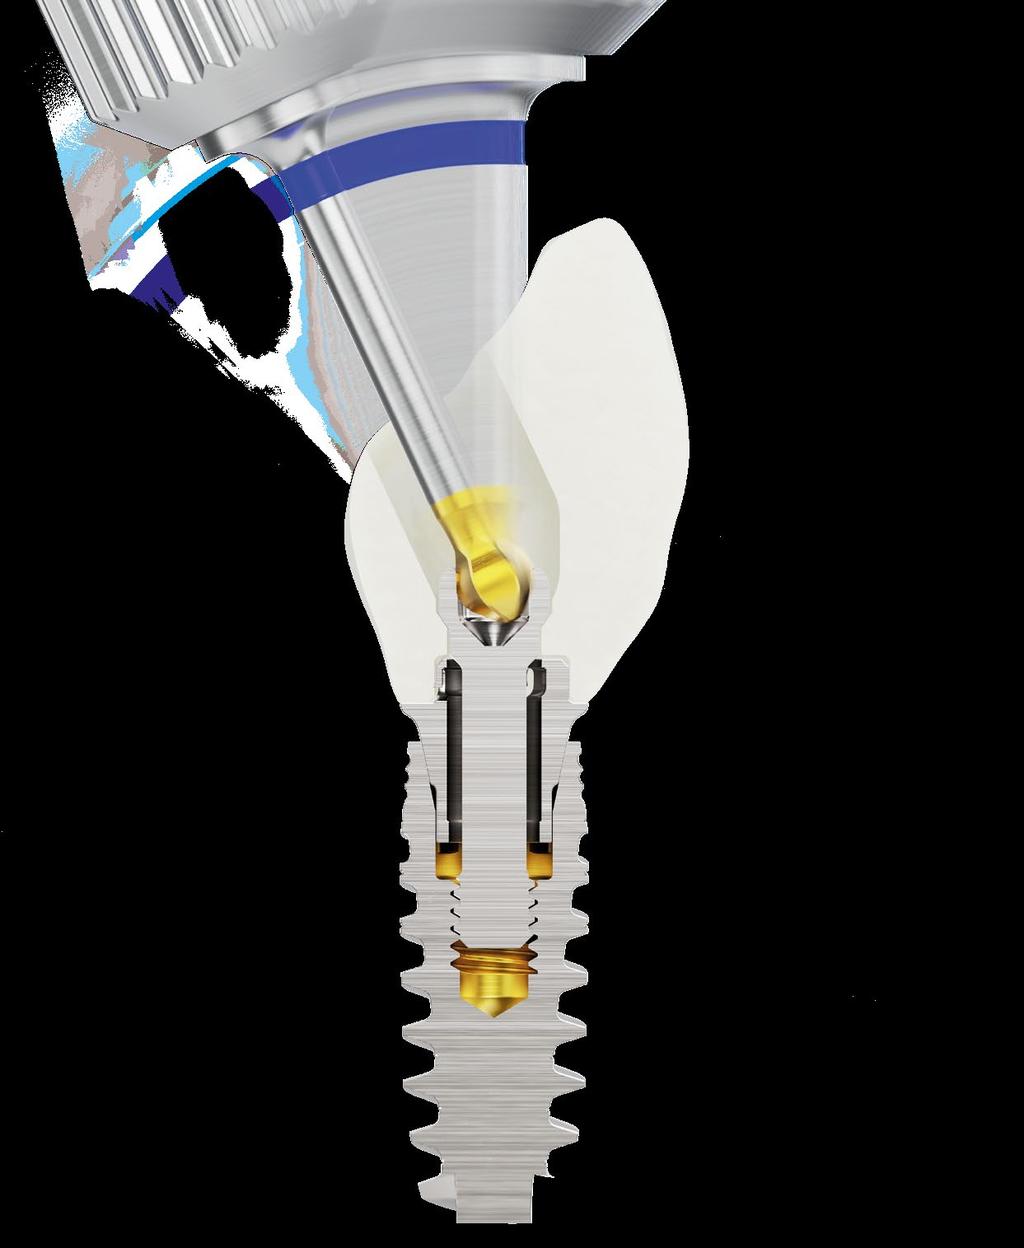 Canale della vite angolato (ASC) Accedi con facilità alla protesi quando lo spazio verticale è limitato, consentendo una funzione occlusale ottimale.